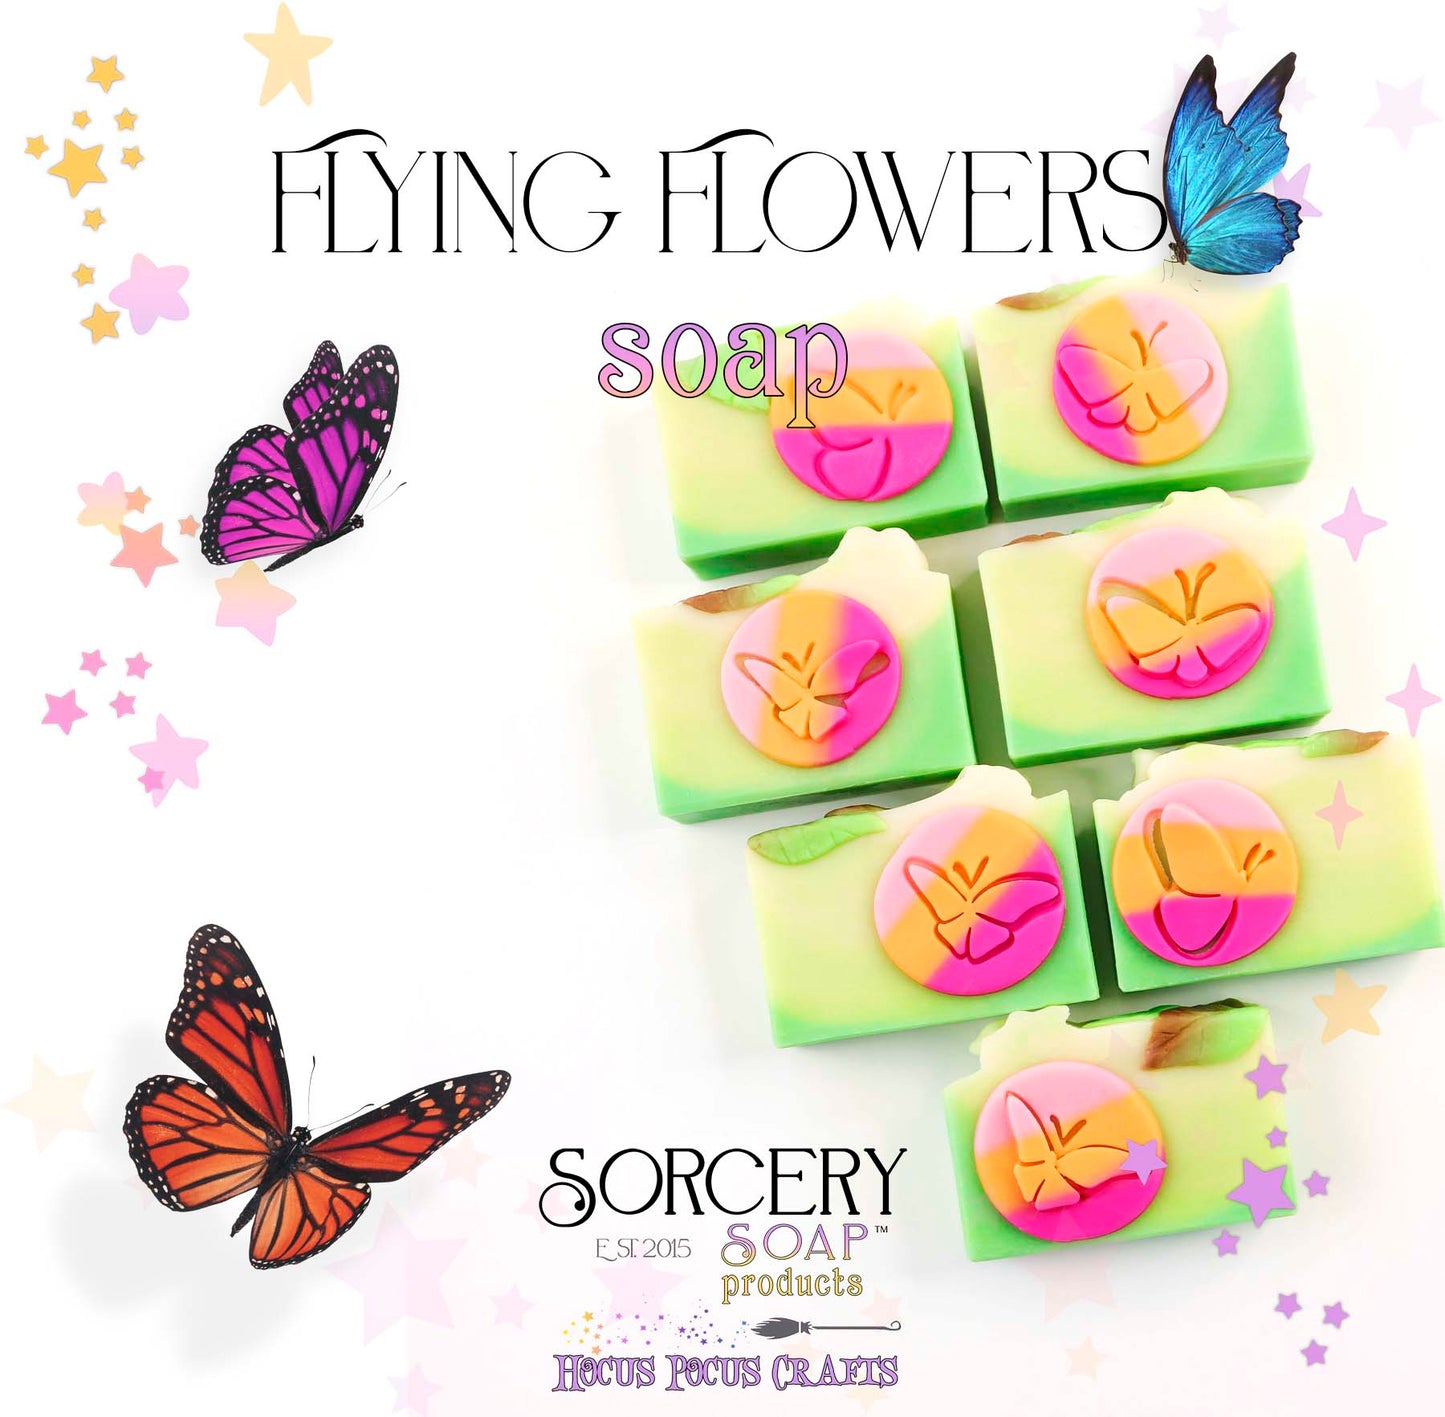 Flying Flower Soap